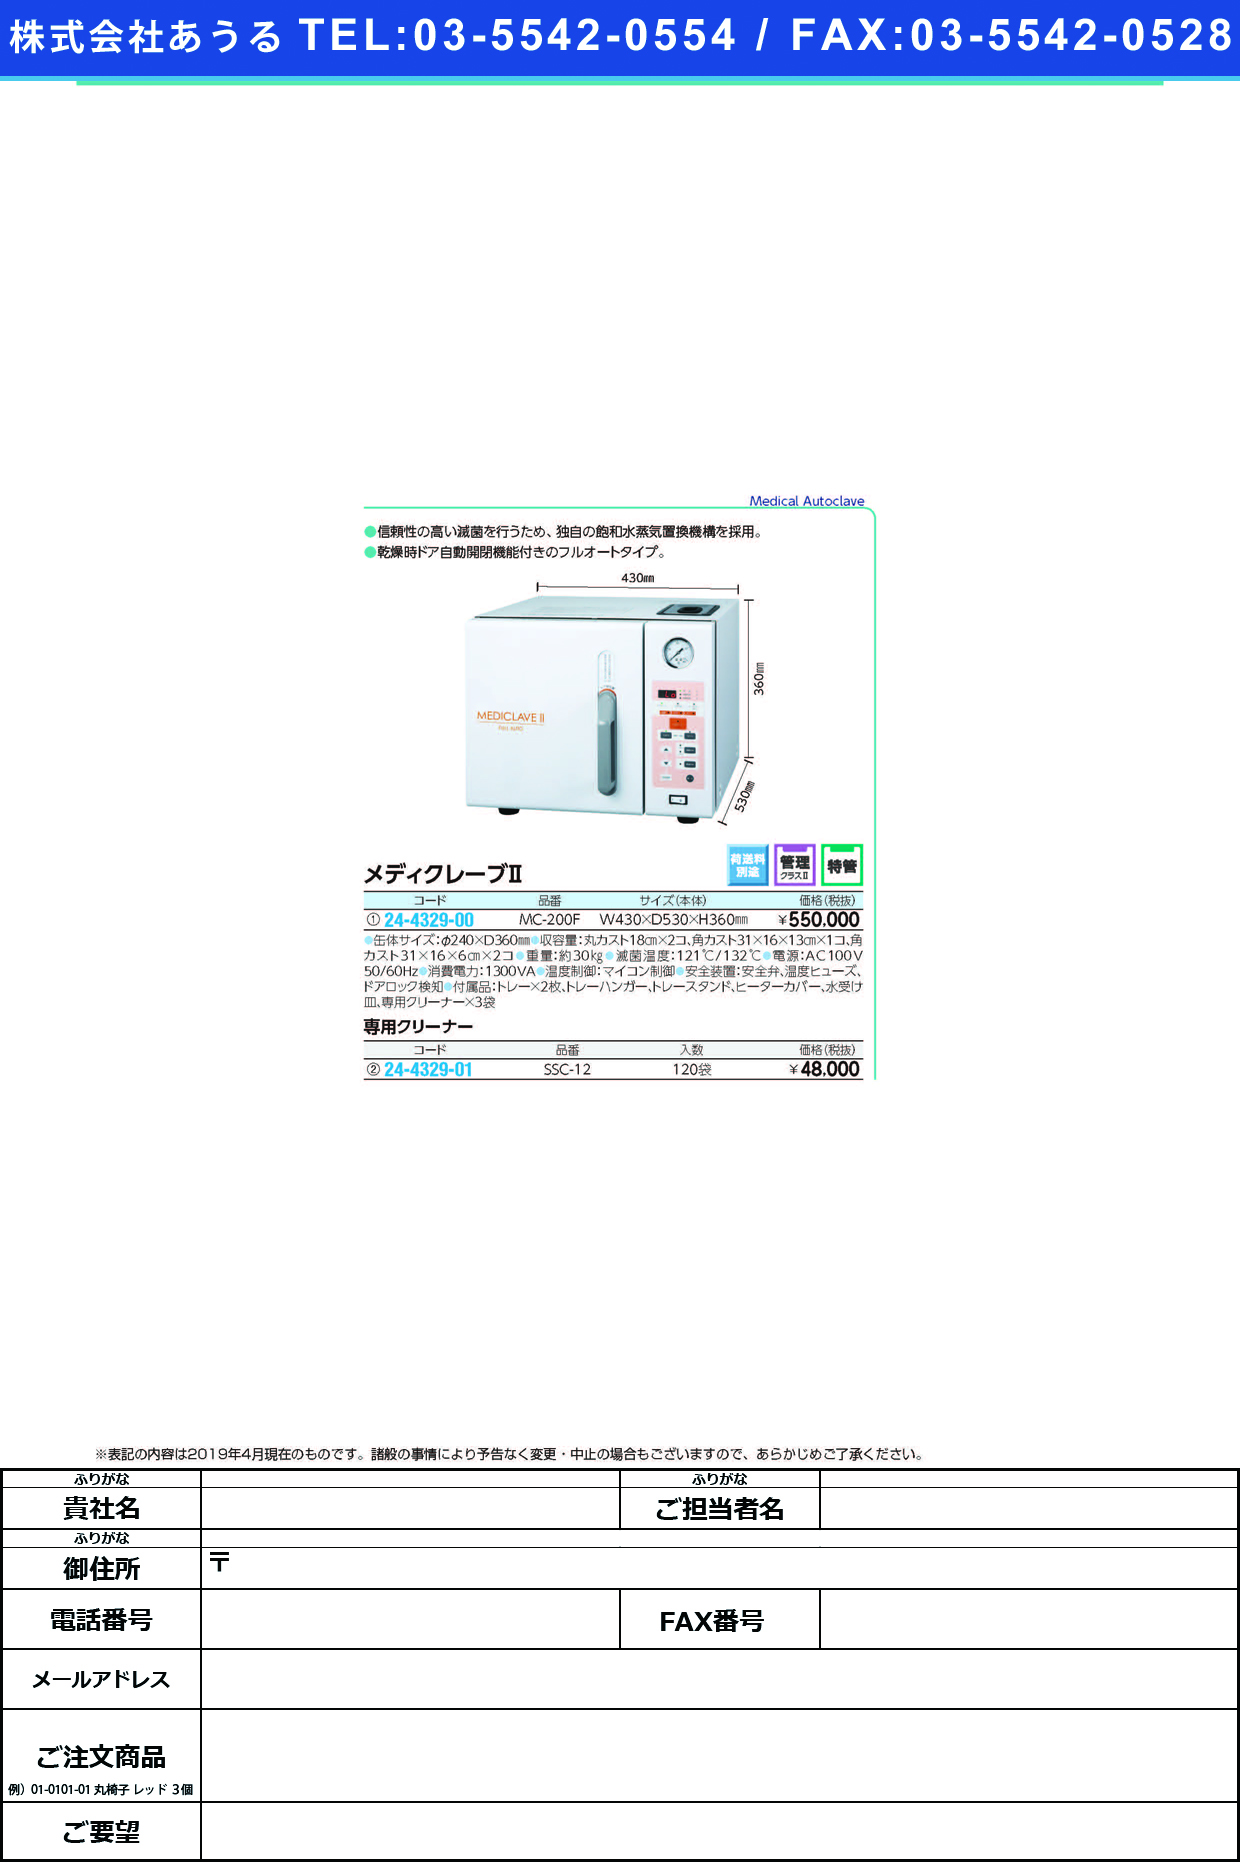 (24-4329-00)メディクレーブⅡ MC-200F(ﾌﾙｵｰﾄ) ﾒﾃﾞｨｸﾚｰﾌﾞ2【1台単位】【2019年カタログ商品】